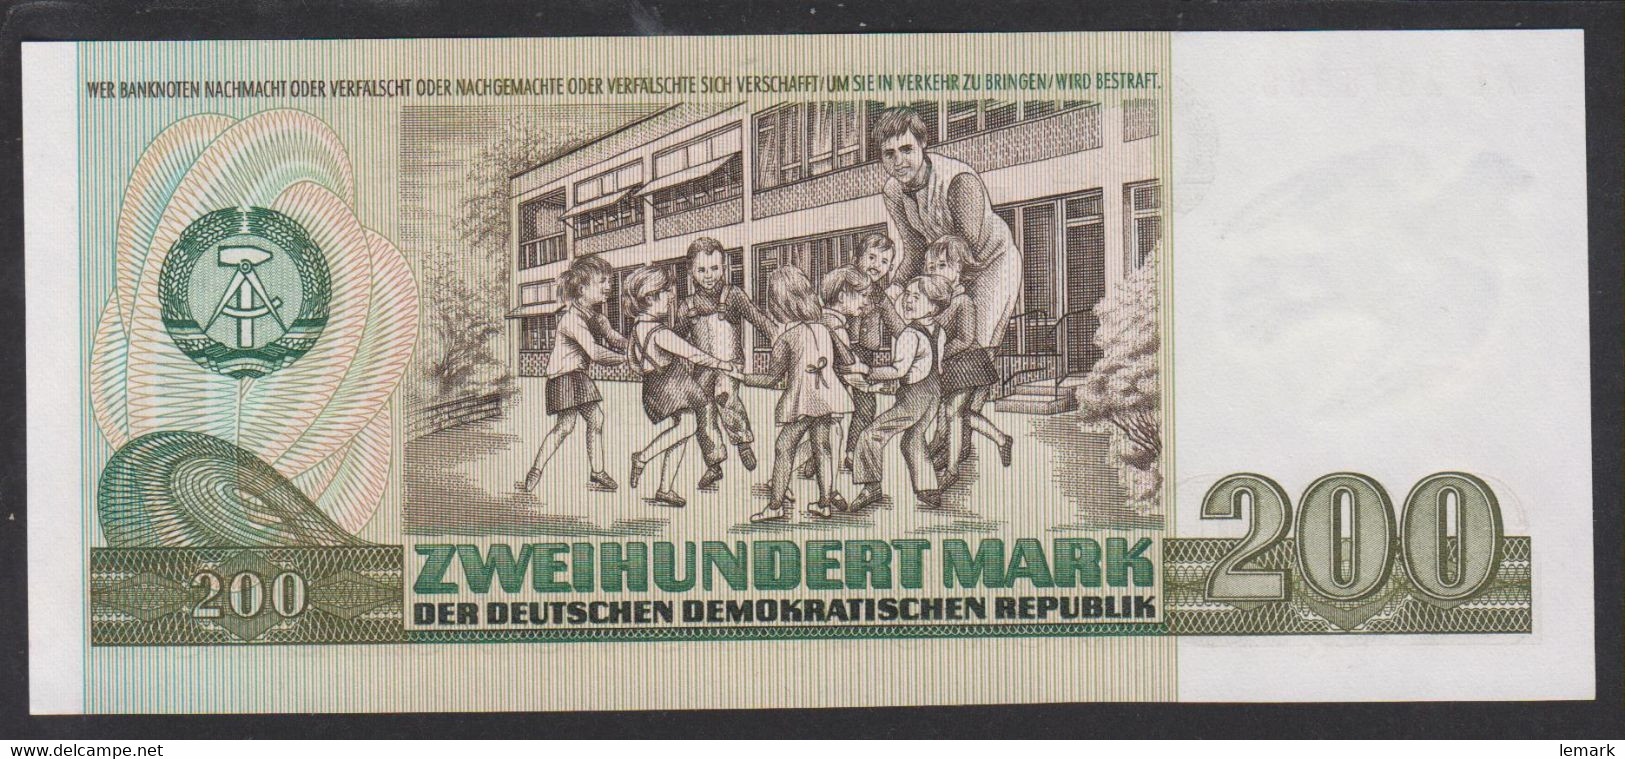 Germany Democratic Republik 200 Mark 1985 32 UNC - 200 Mark